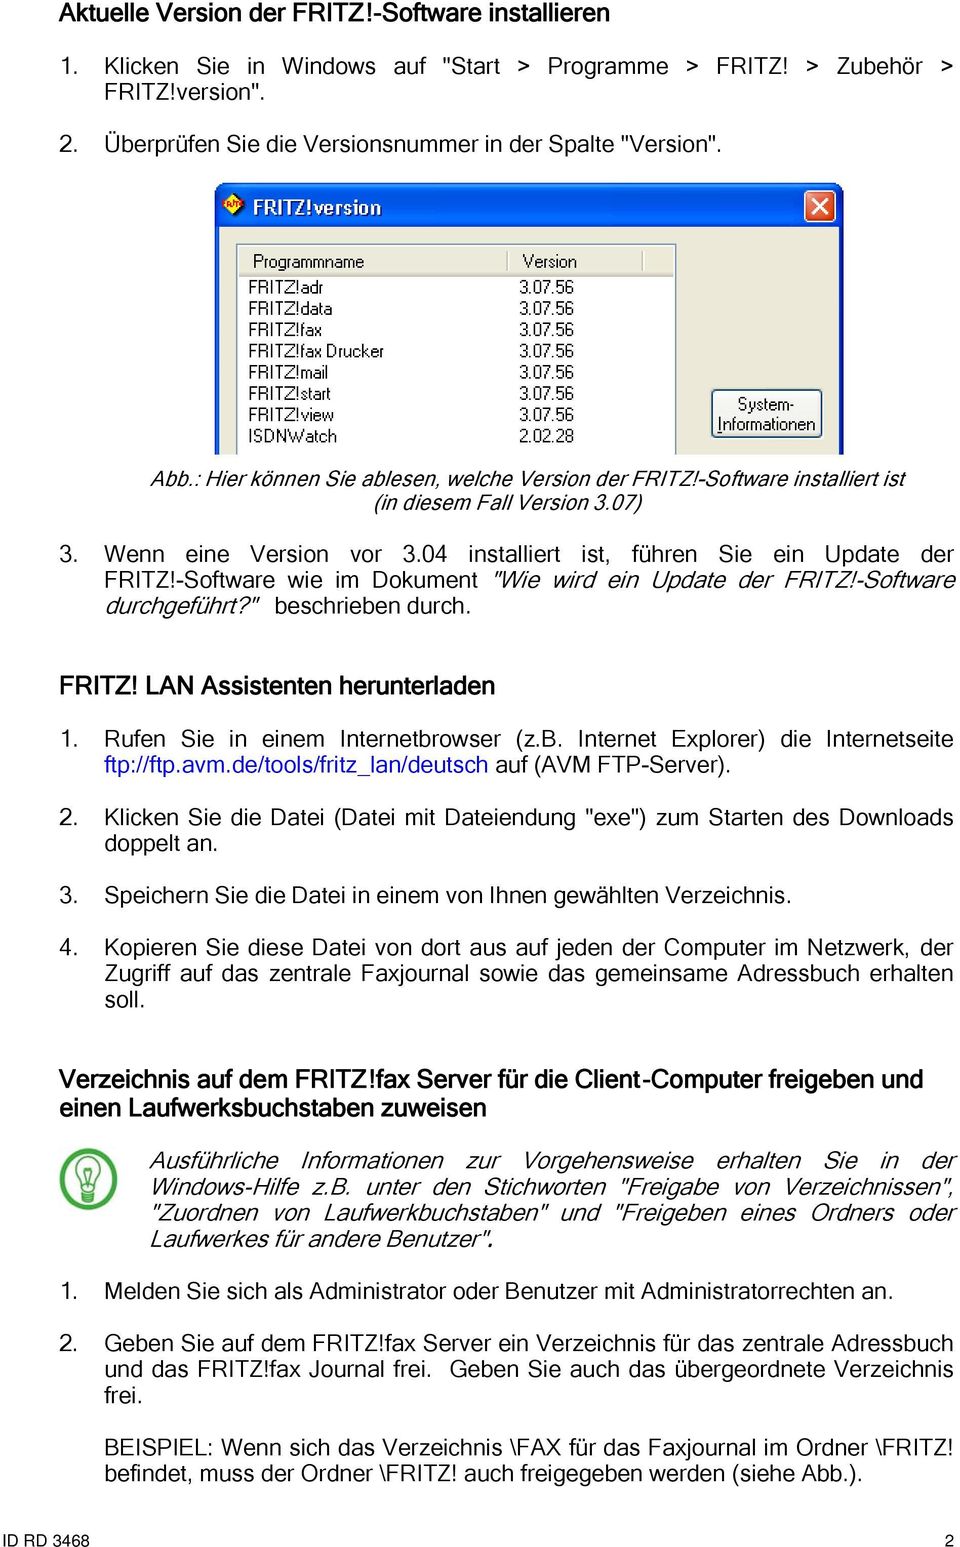 -Software wie im Dokument "Wie wird ein Update der FRITZ!-Software durchgeführt?" beschrieben durch. FRITZ! LAN Assistenten herunterladen 1. Rufen Sie in einem Internetbrowser (z.b. Internet Explorer) die Internetseite ftp://ftp.